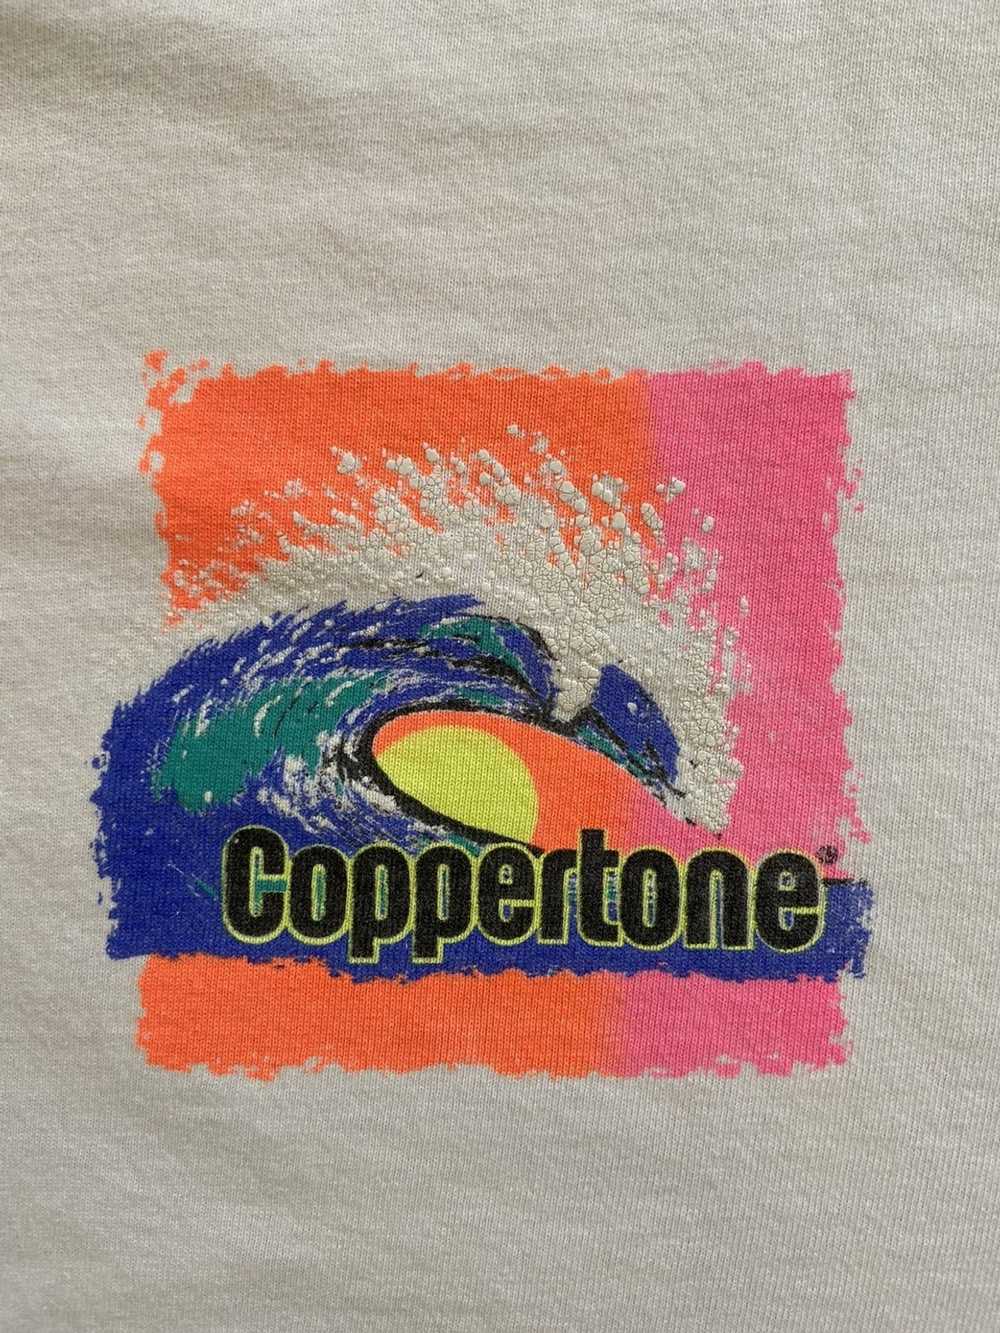 Vintage vintage single stitch coppertone t-shirt - image 4